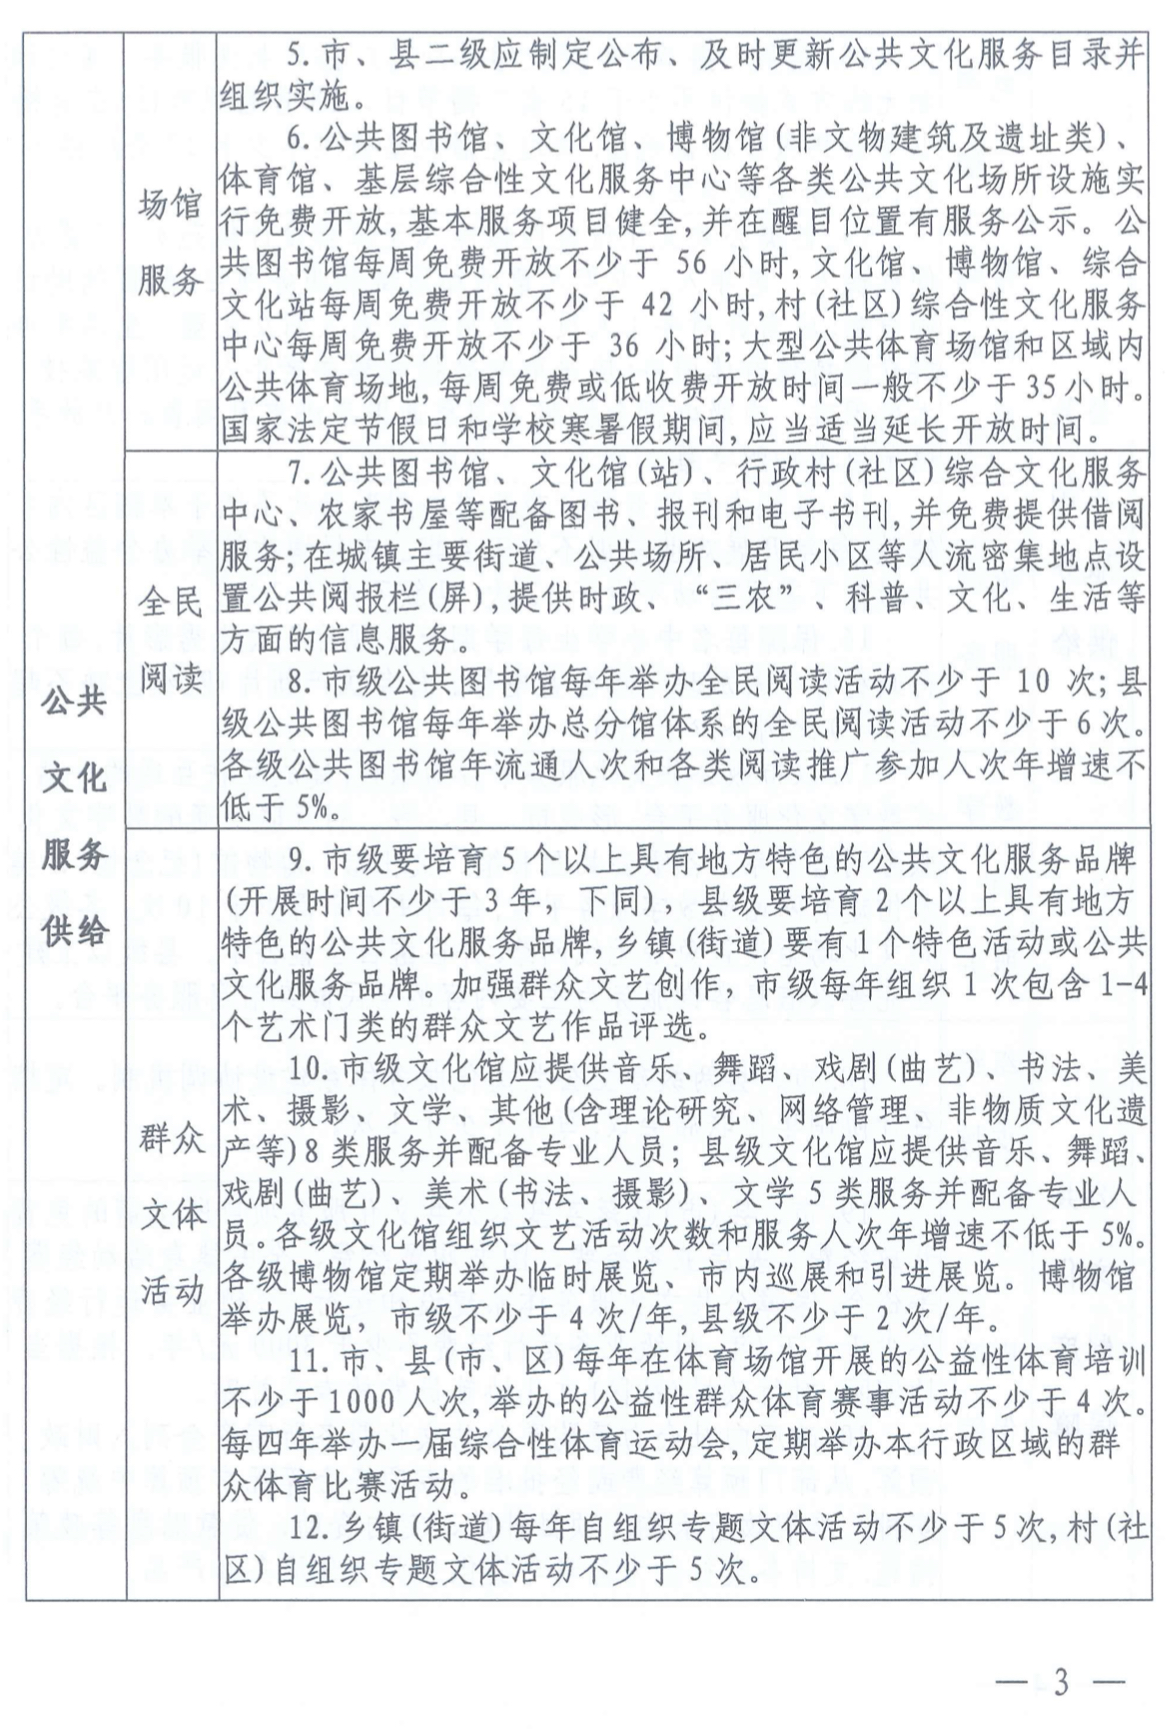 安阳市文广体旅局 安阳市文物局关于印发《安阳市基本公共文化服务实施标准（2021-2025）》的通知